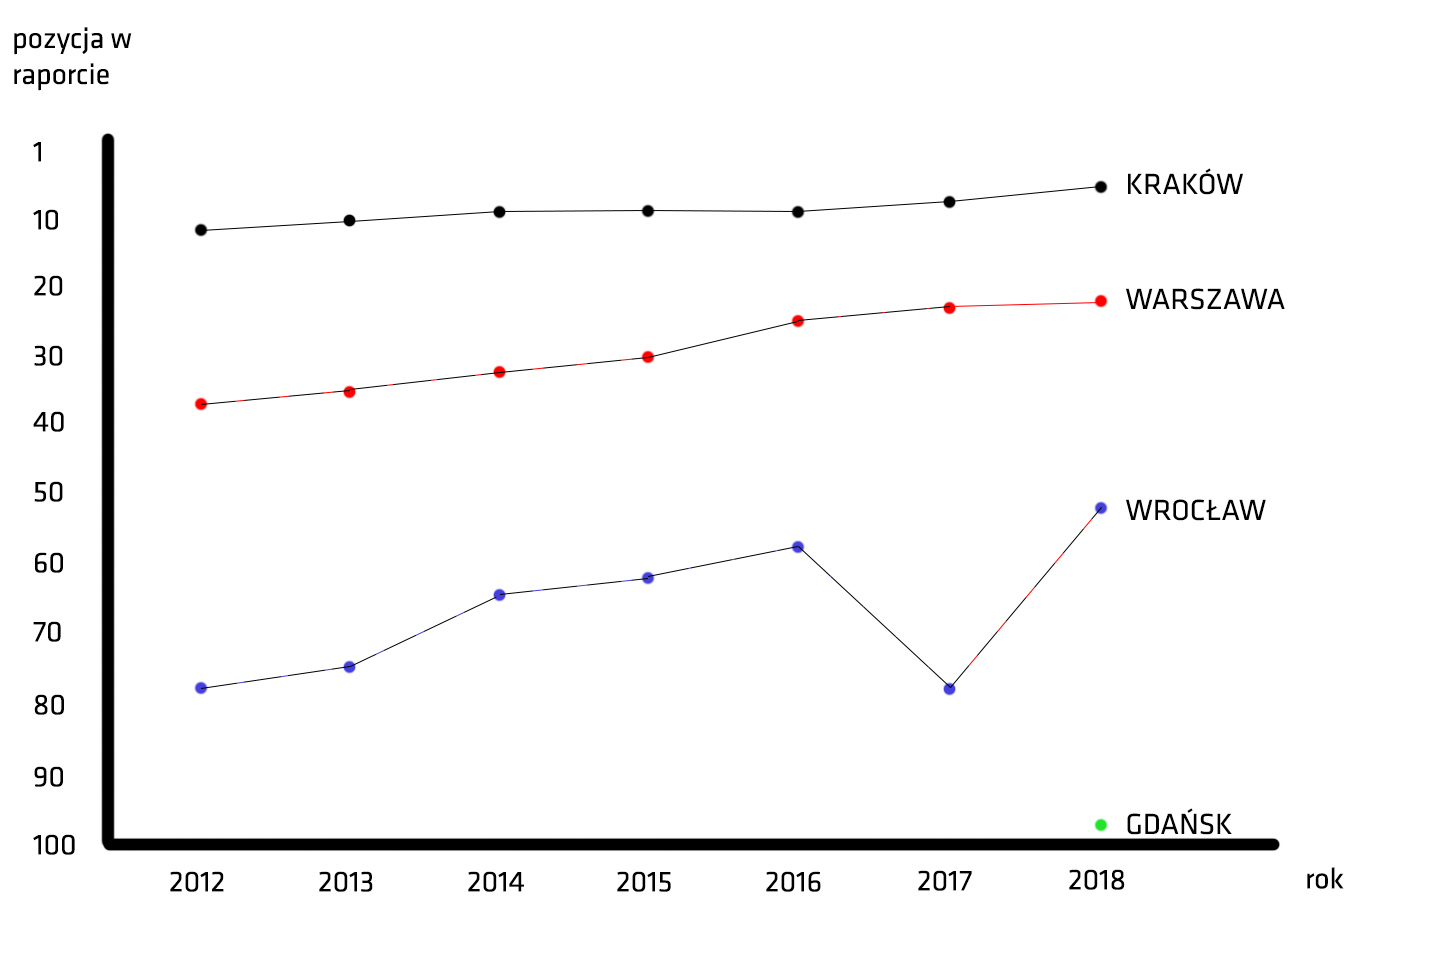 Polskie miasta w raportach Tholons w latach 2012 - 2018 - opracowanie własnePolskie miasta w raporcie Tholons - ranking z lat 2017 i 2018 - opracowanie własne